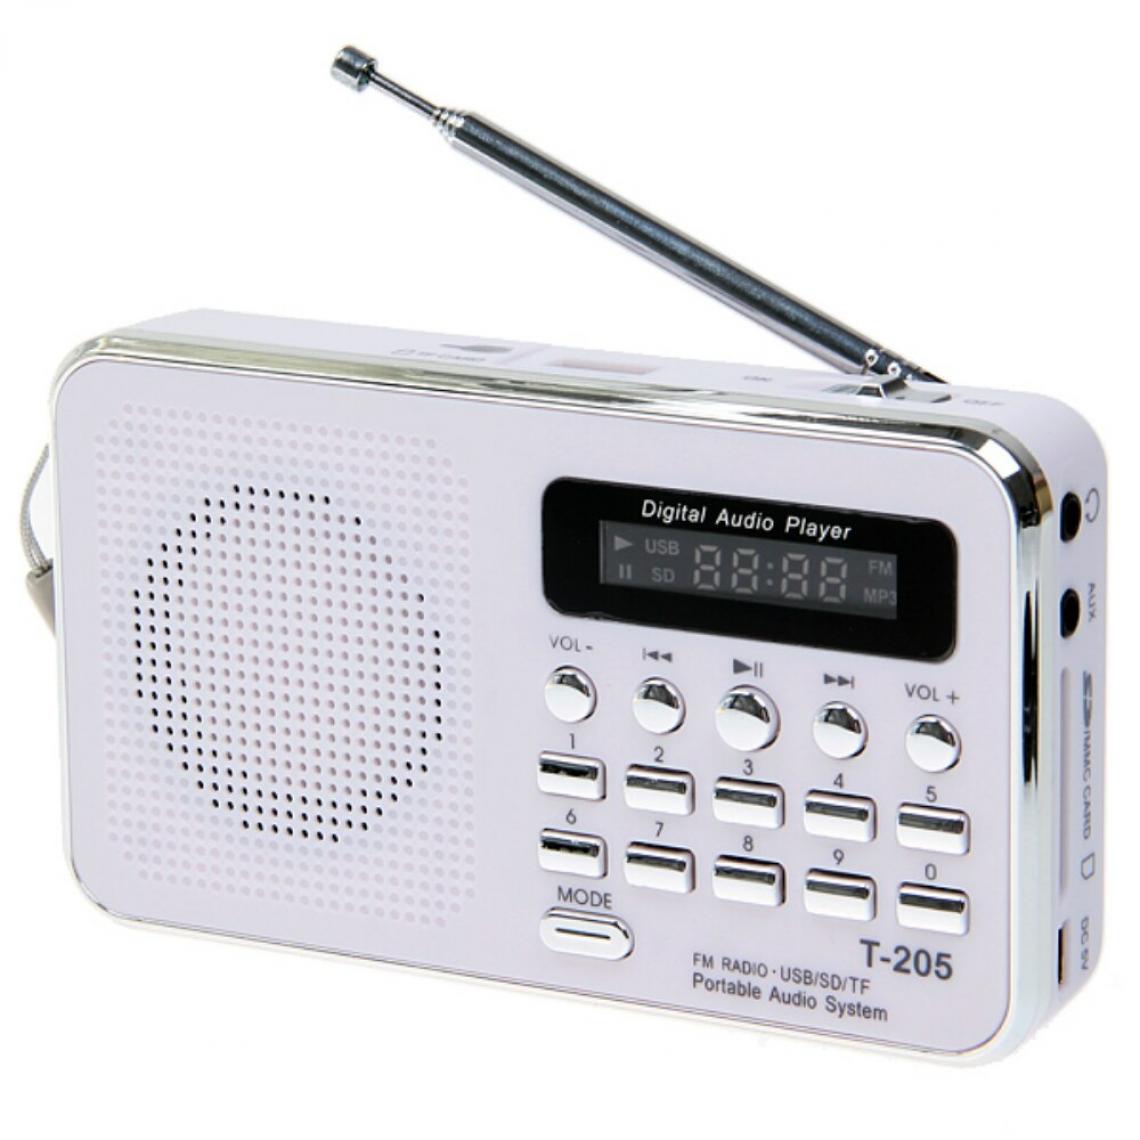 Universal - Vente chaude T205 FM Radio Portable HiFi Haut-parleur Multimédia Numérique MP3 Musique Haut-parleur Blanc Camping Outdoor Sports | Radio(blanche) - Radio